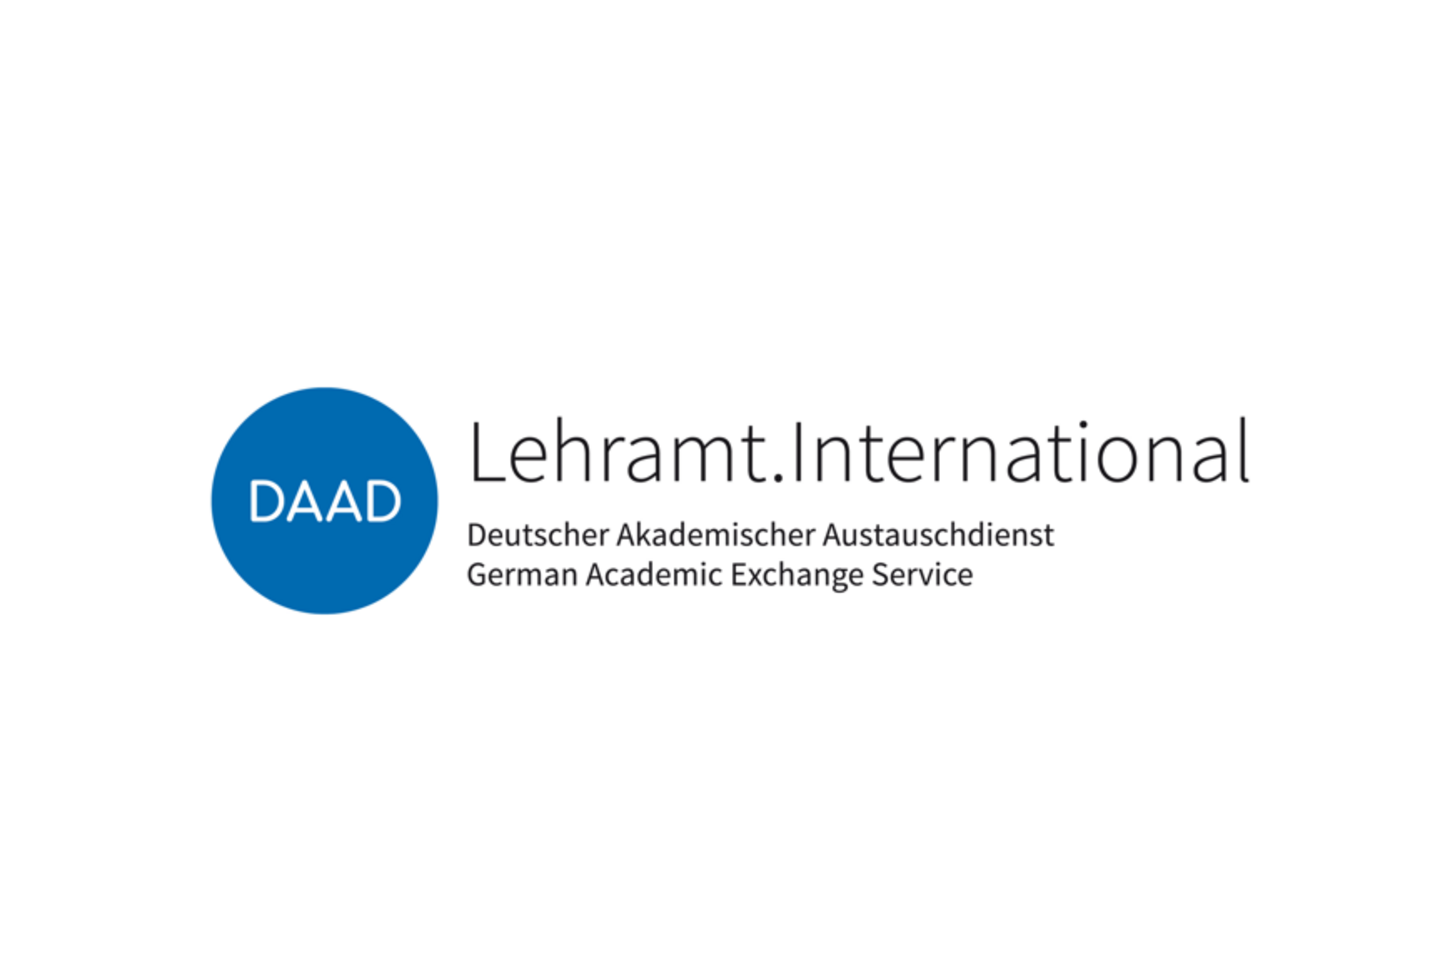 German Academic Exchange Service – Deutscher Akademischer Austauschdienst